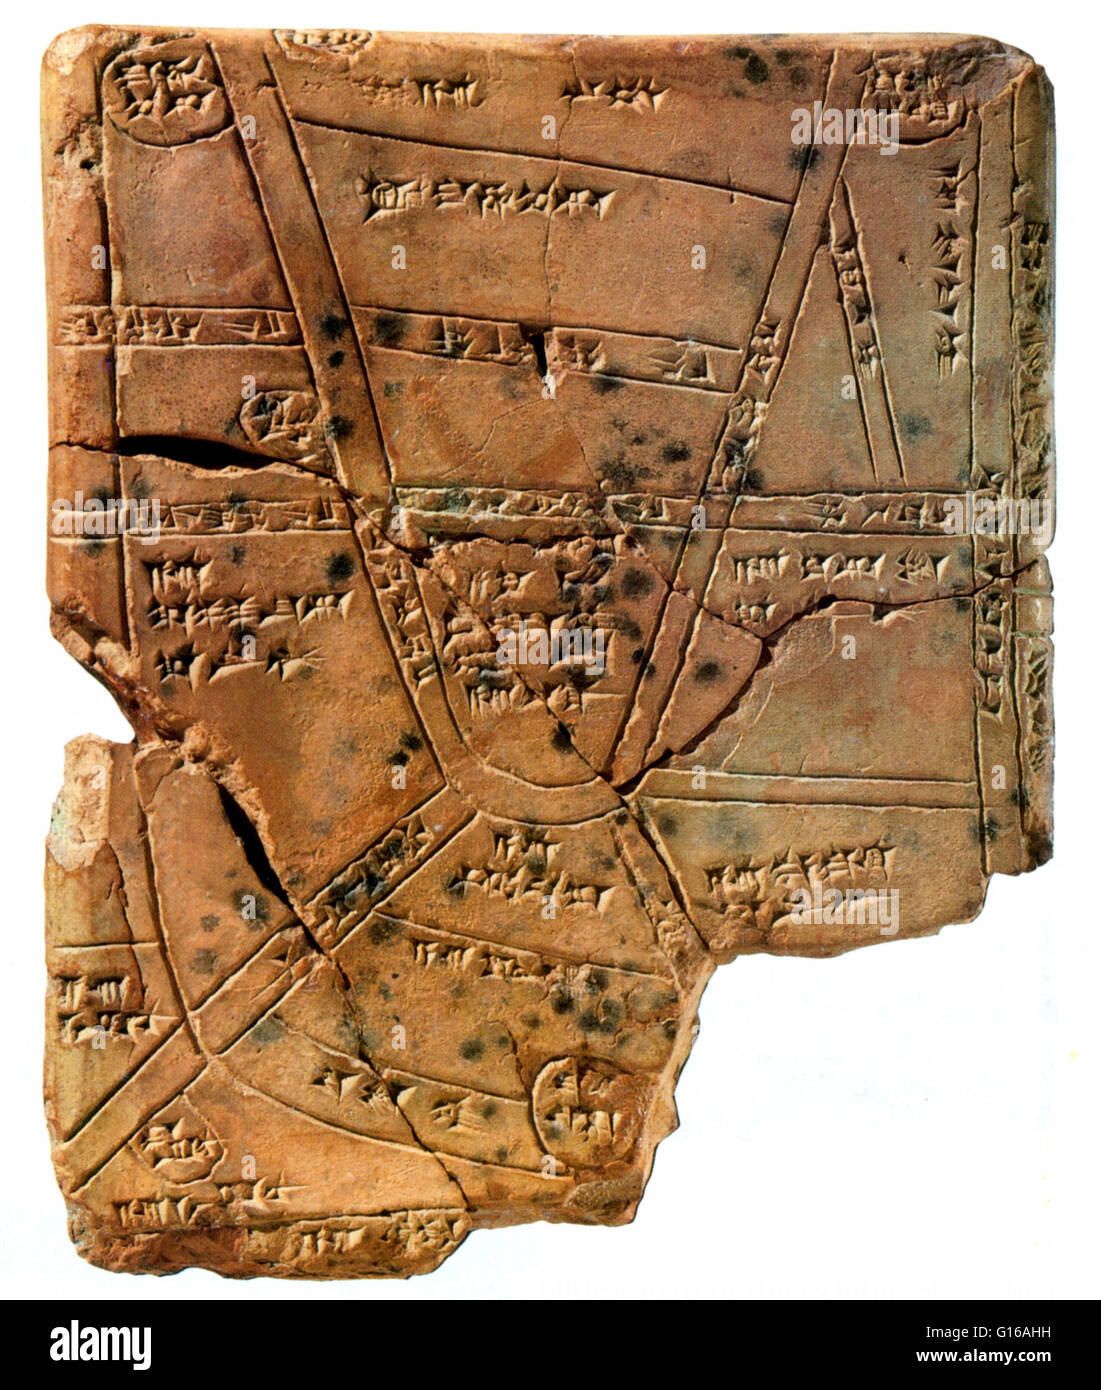 Clay Tablet cuneiforme, dal 1500 BC, caratteristiche la prima nota di rappresentazione di una mappa che mostra i campi appartenenti al royal estates in Nippur. Nippur era uno dei più antichi di tutta la città sumera. È stata la sede speciale del culto del sumerico andare Foto Stock